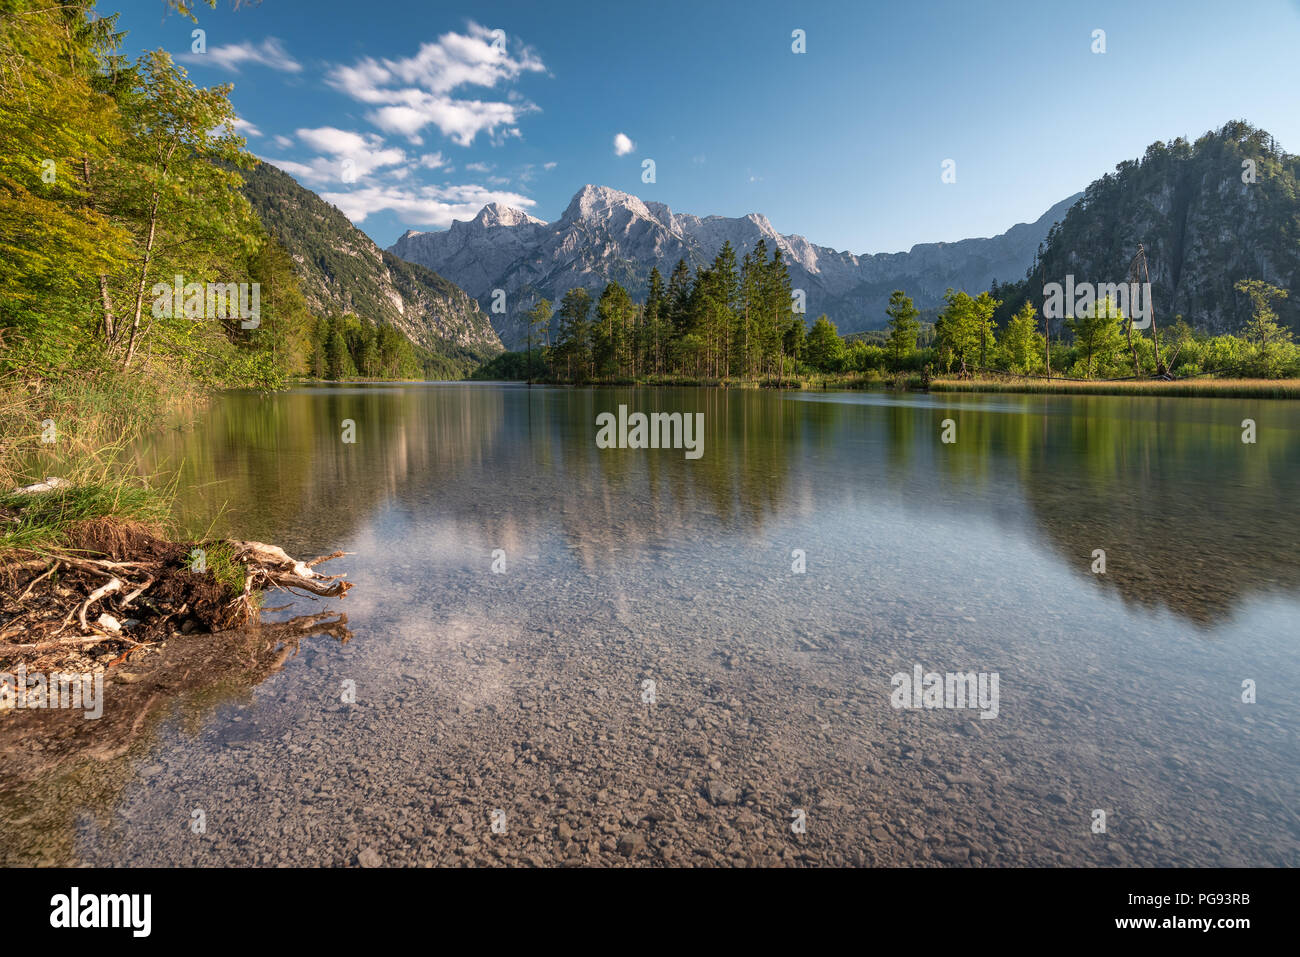 Bella Amlsee in Austria Superiore alla fine di una calda estate 2018. Acqua limpida e riflettendo le montagne sono la base per una perfetta natura fatta comp. Foto Stock